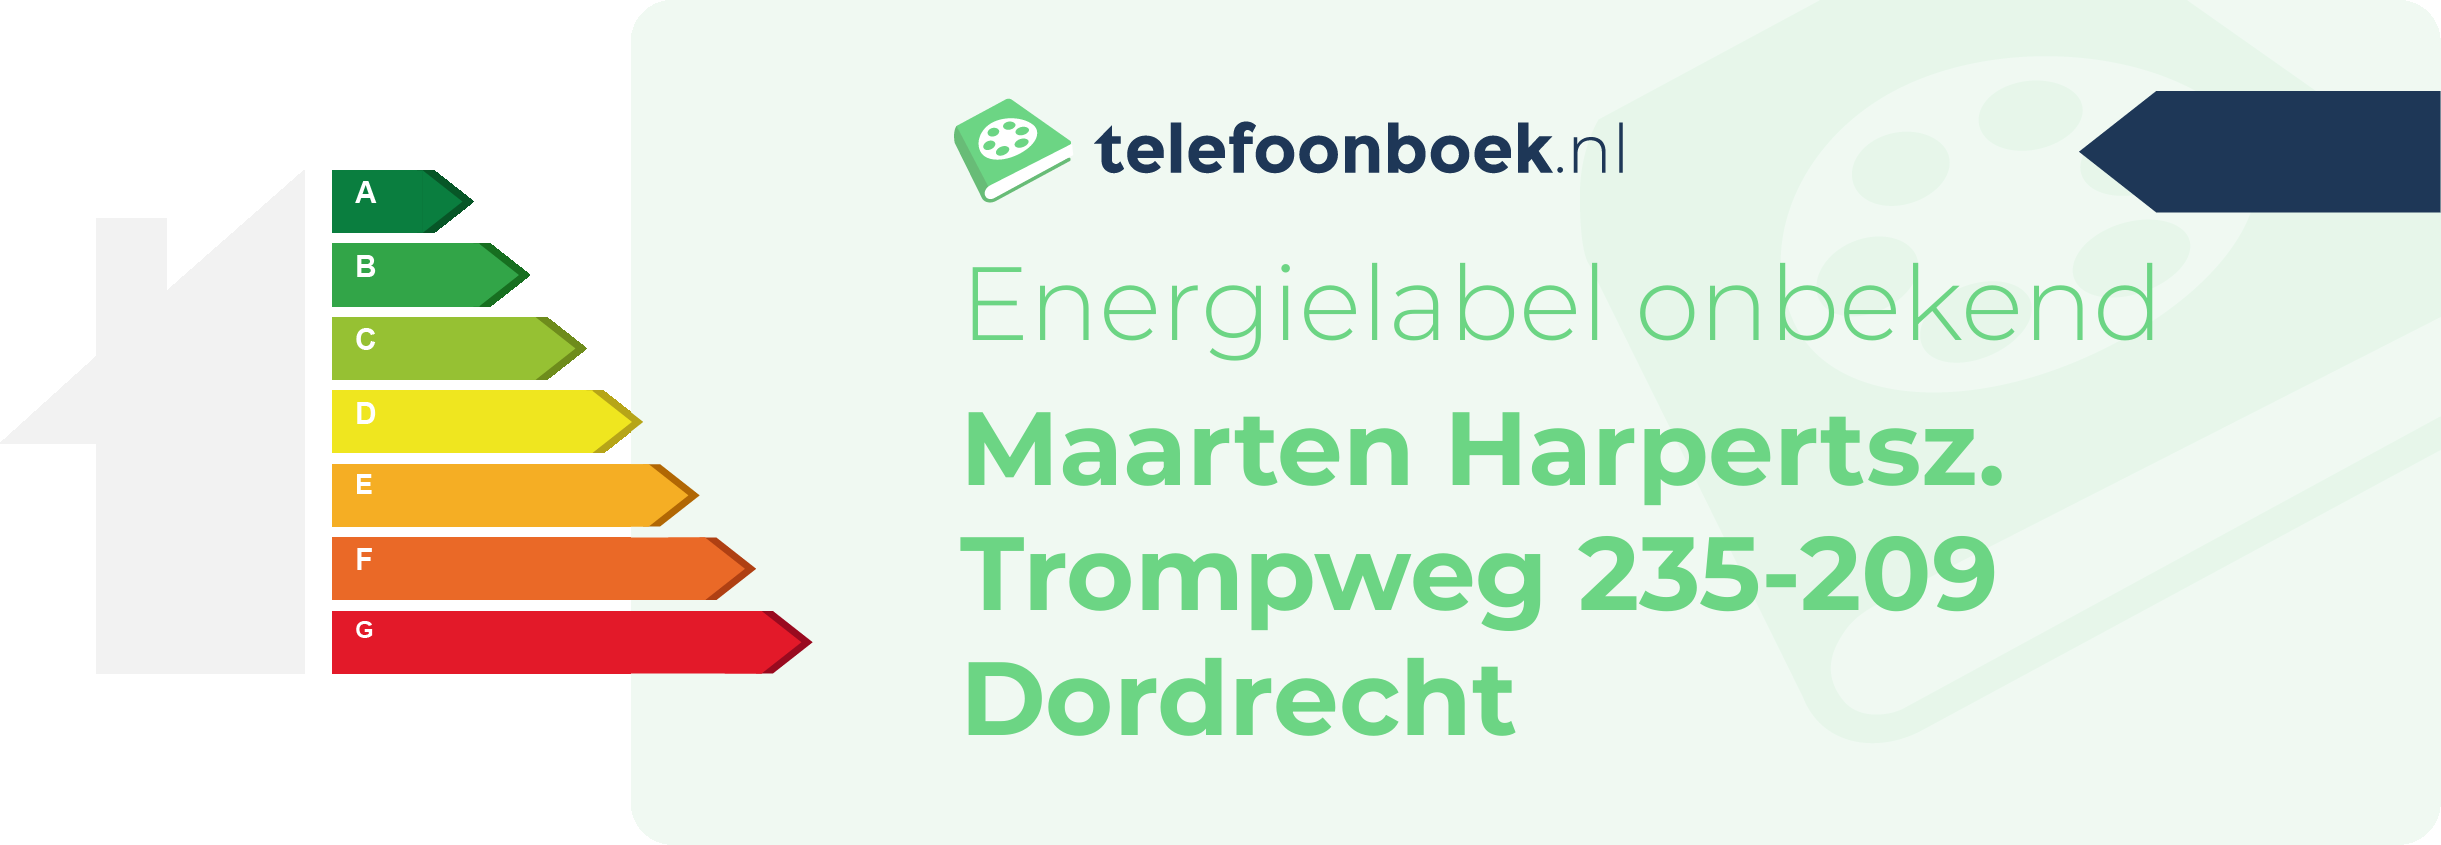 Energielabel Maarten Harpertsz. Trompweg 235-209 Dordrecht